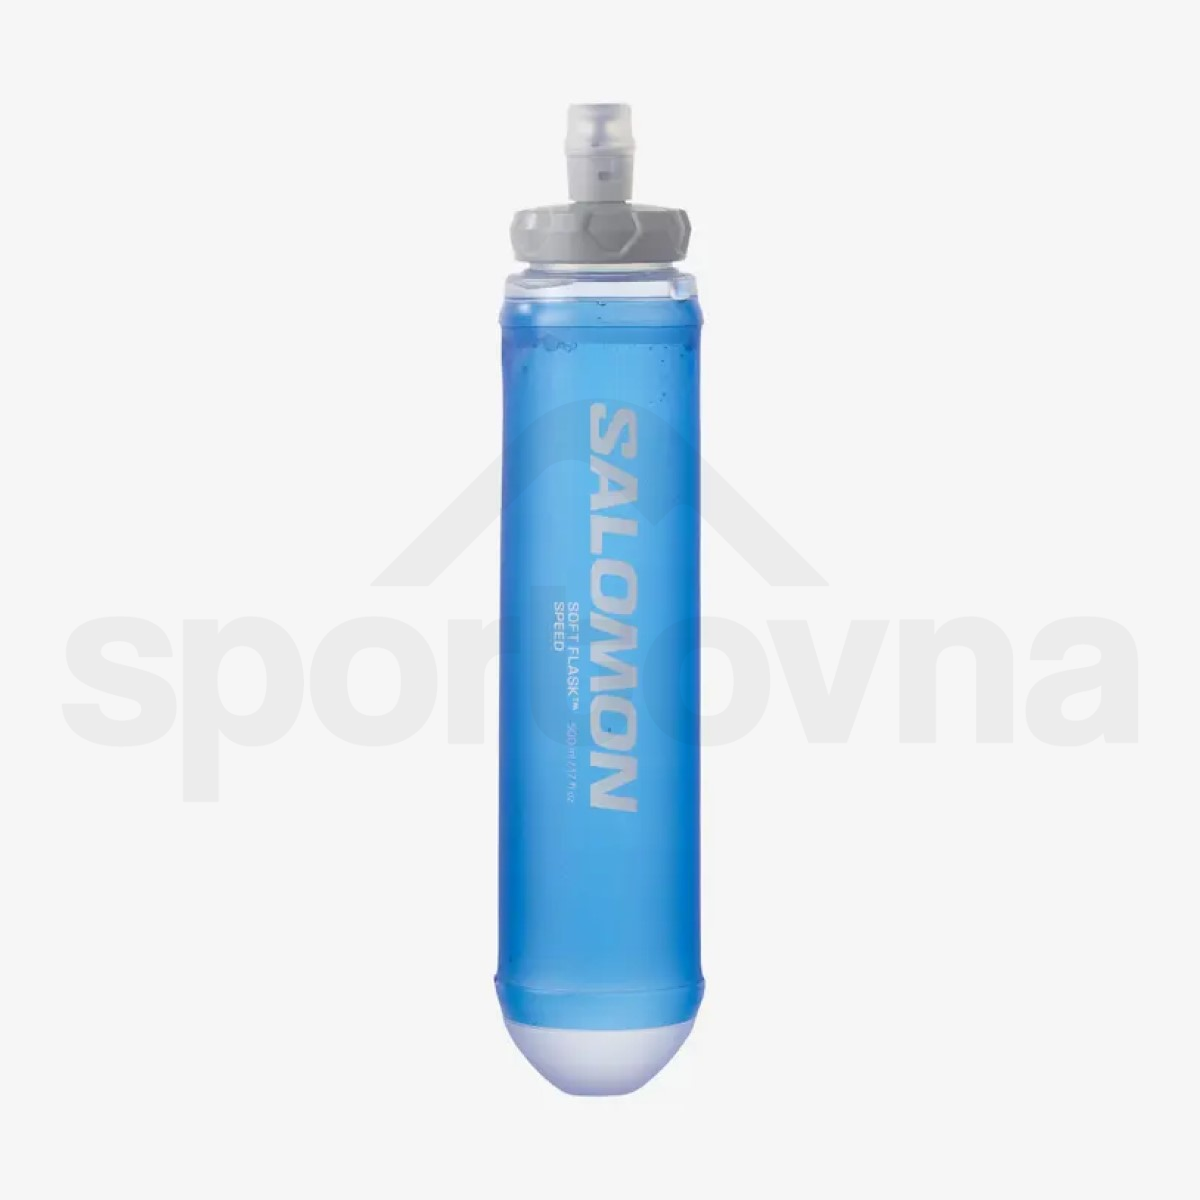 Batoh Salomon Sense Pro 5 with flasks - černá